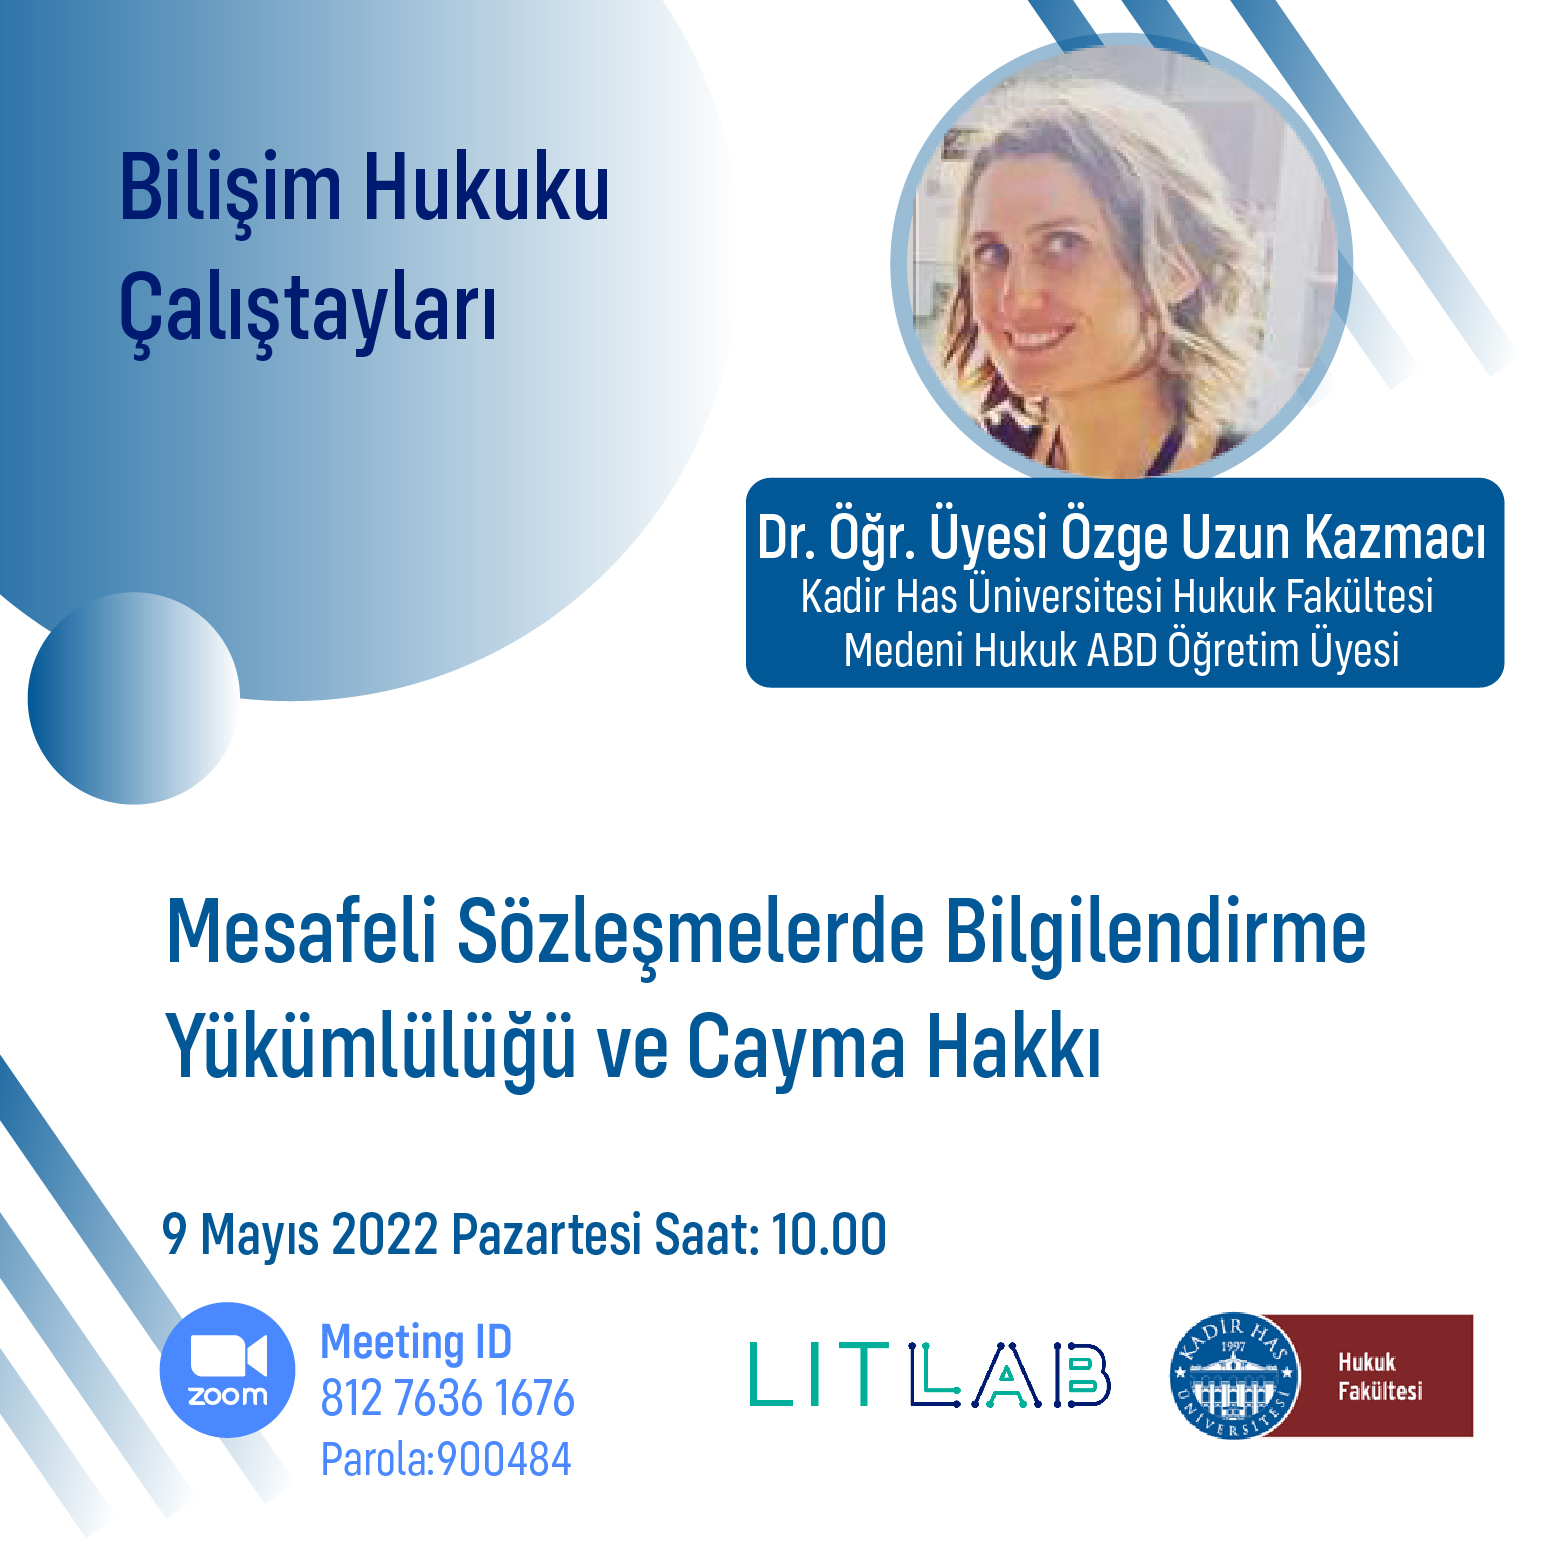 KHAS LITLAB IT Law Workskops: Asst. Prof. Özge Uzun Kazmacı